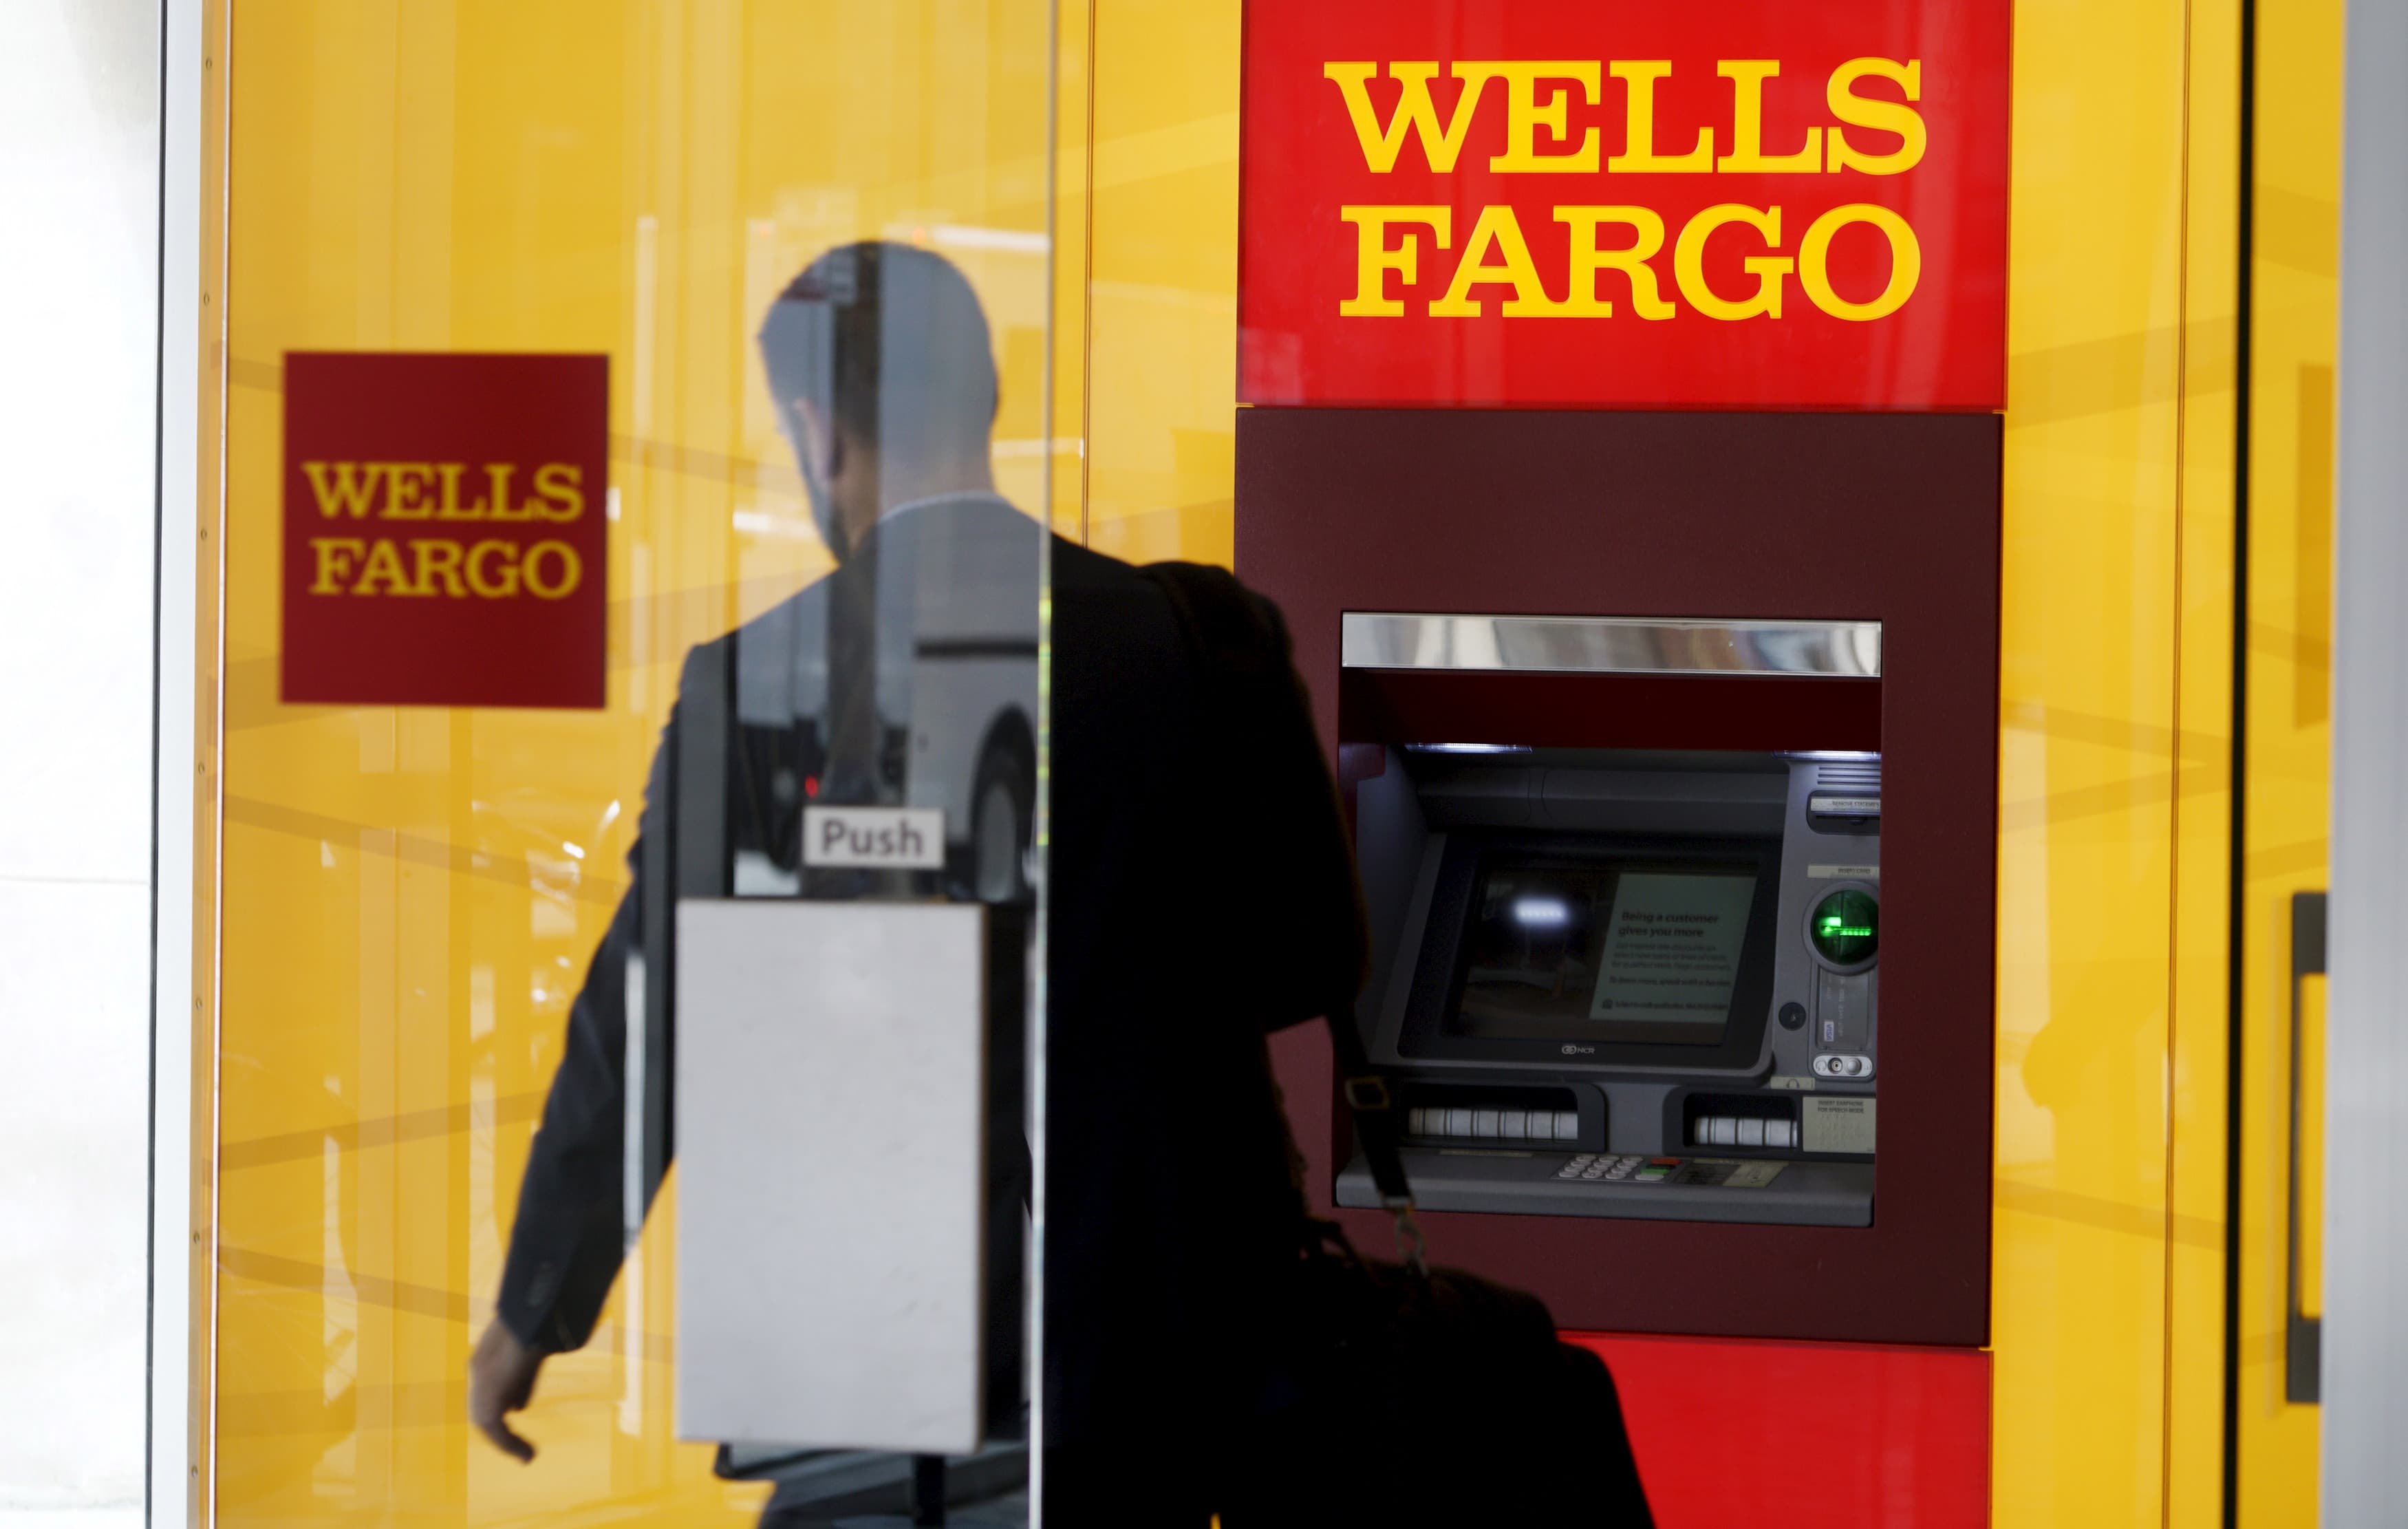 أمر Wells Fargo بدفع 3.7 مليار دولار مقابل الفضائح الماضية. إليكم سبب رؤيتنا لها على أنها إيجابية